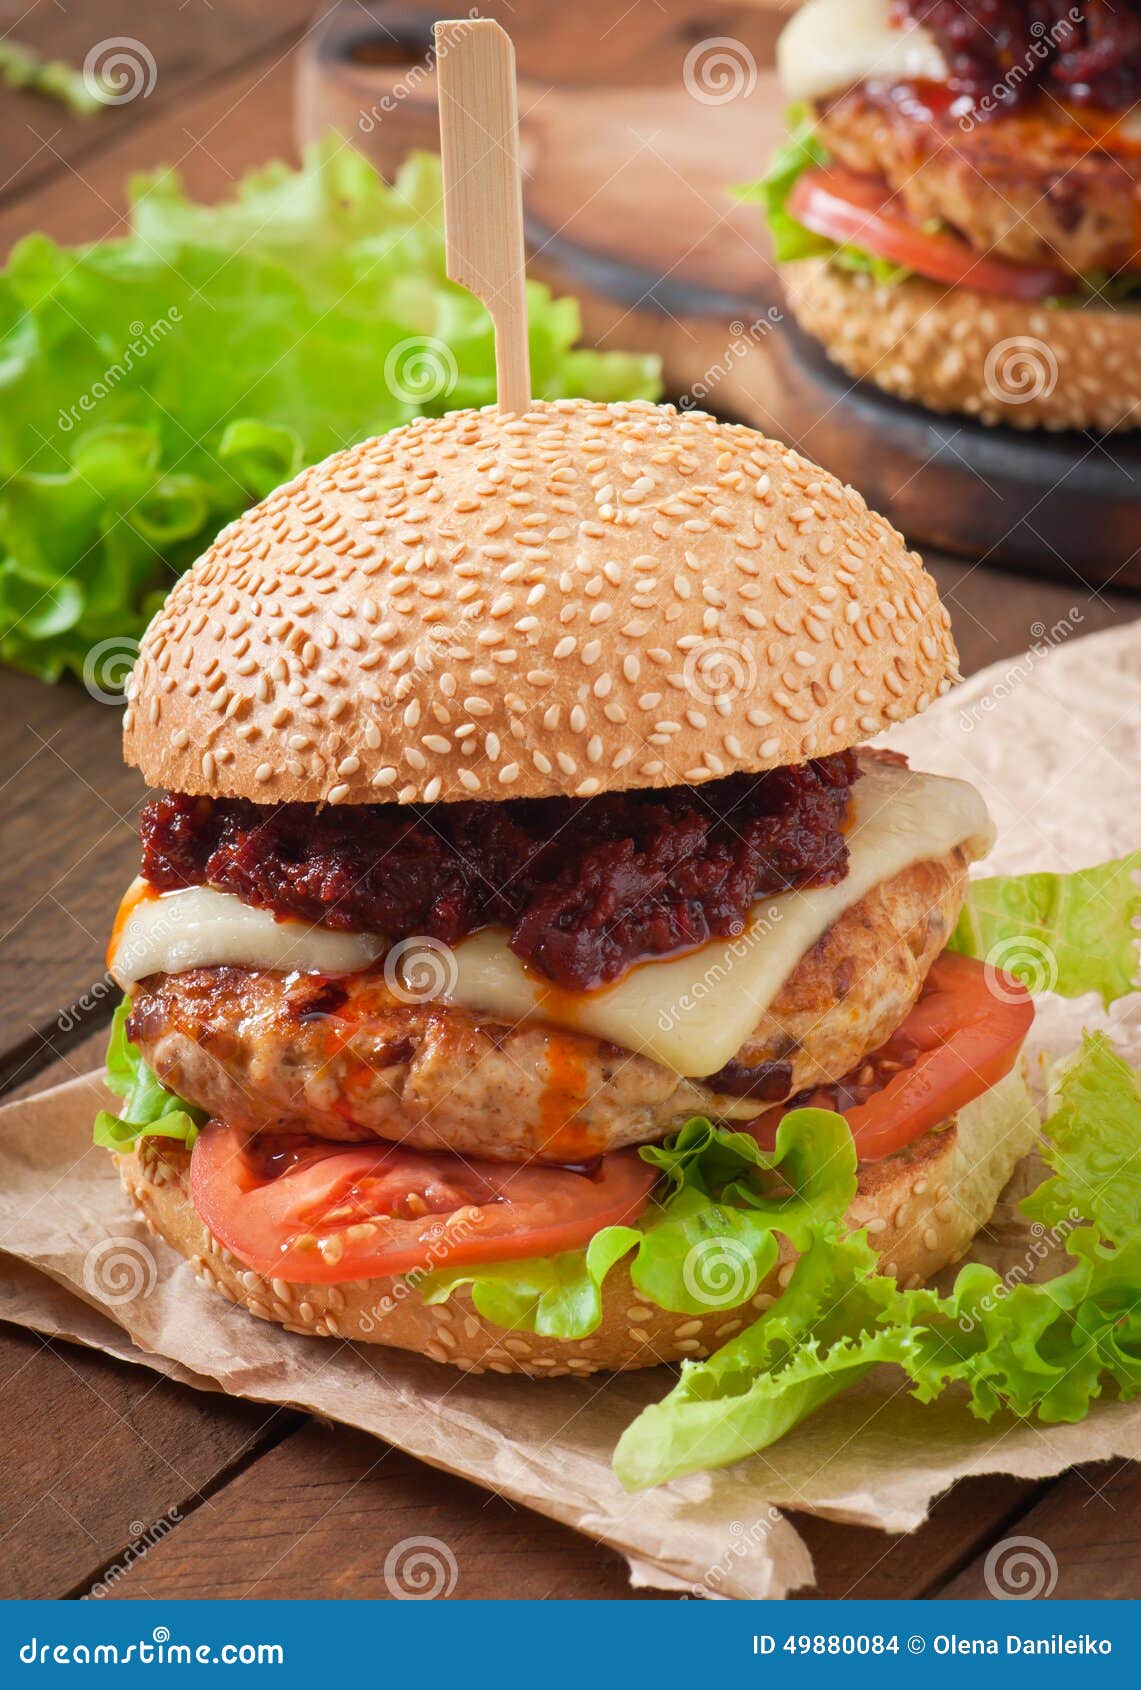 Amerikanischer Burger Mit Huhn Und Speck Stockfoto - Bild von ...